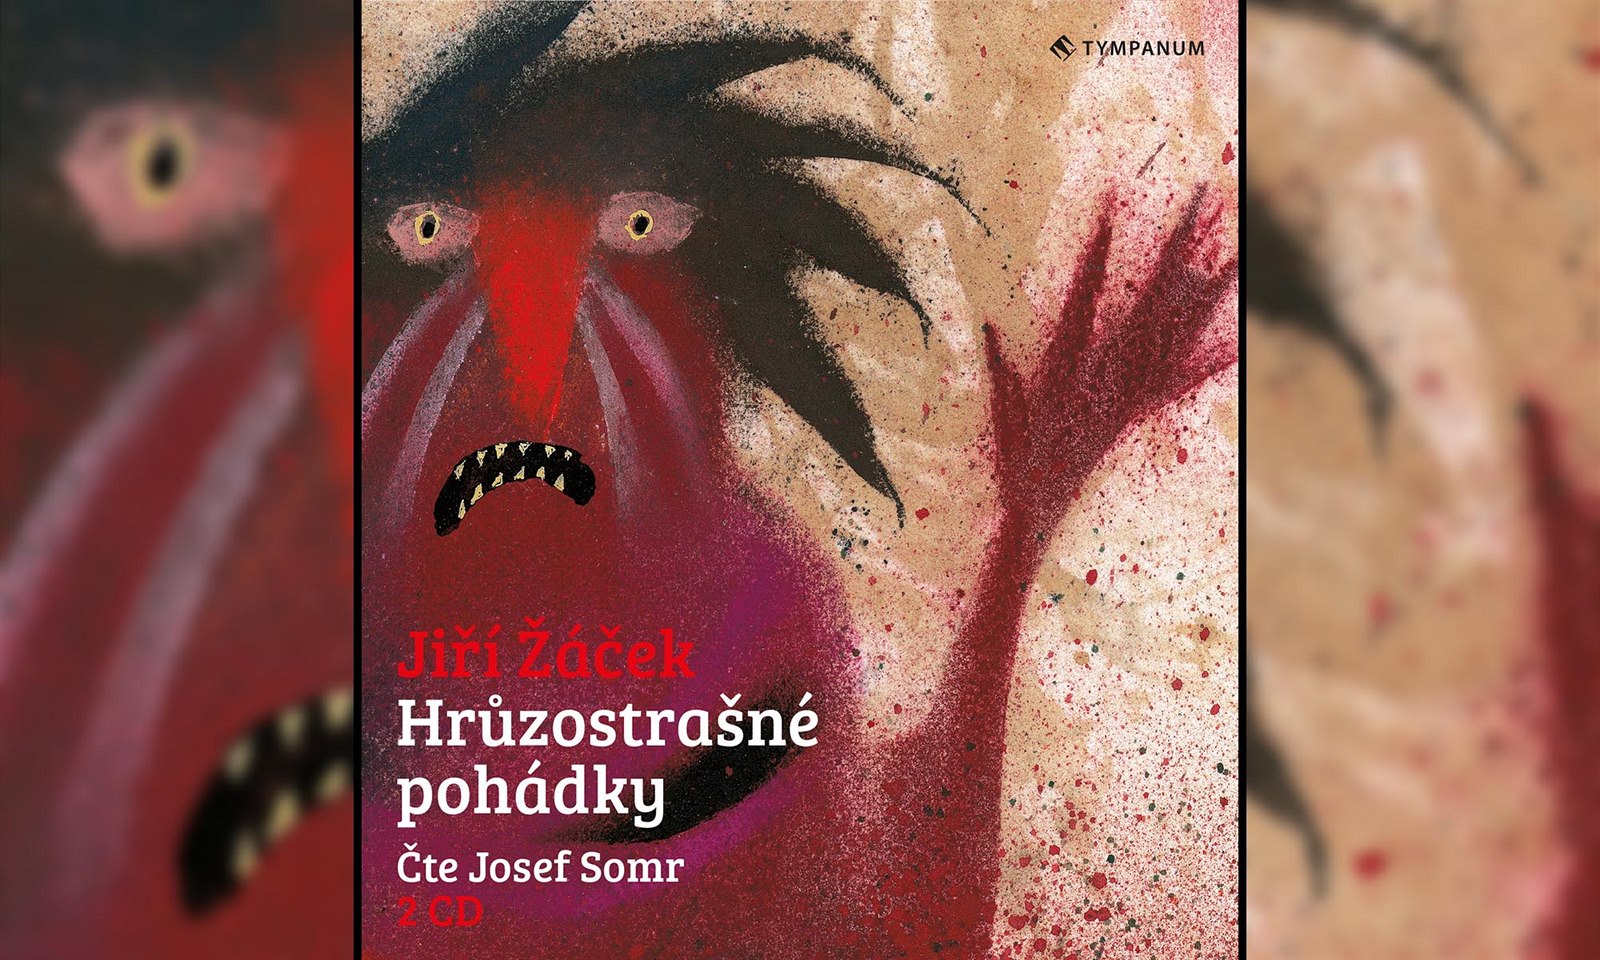 Hrůzostrašné pohádky: Josef Somr čte originální příběhy v audioknize zdarma  - iDNES.cz